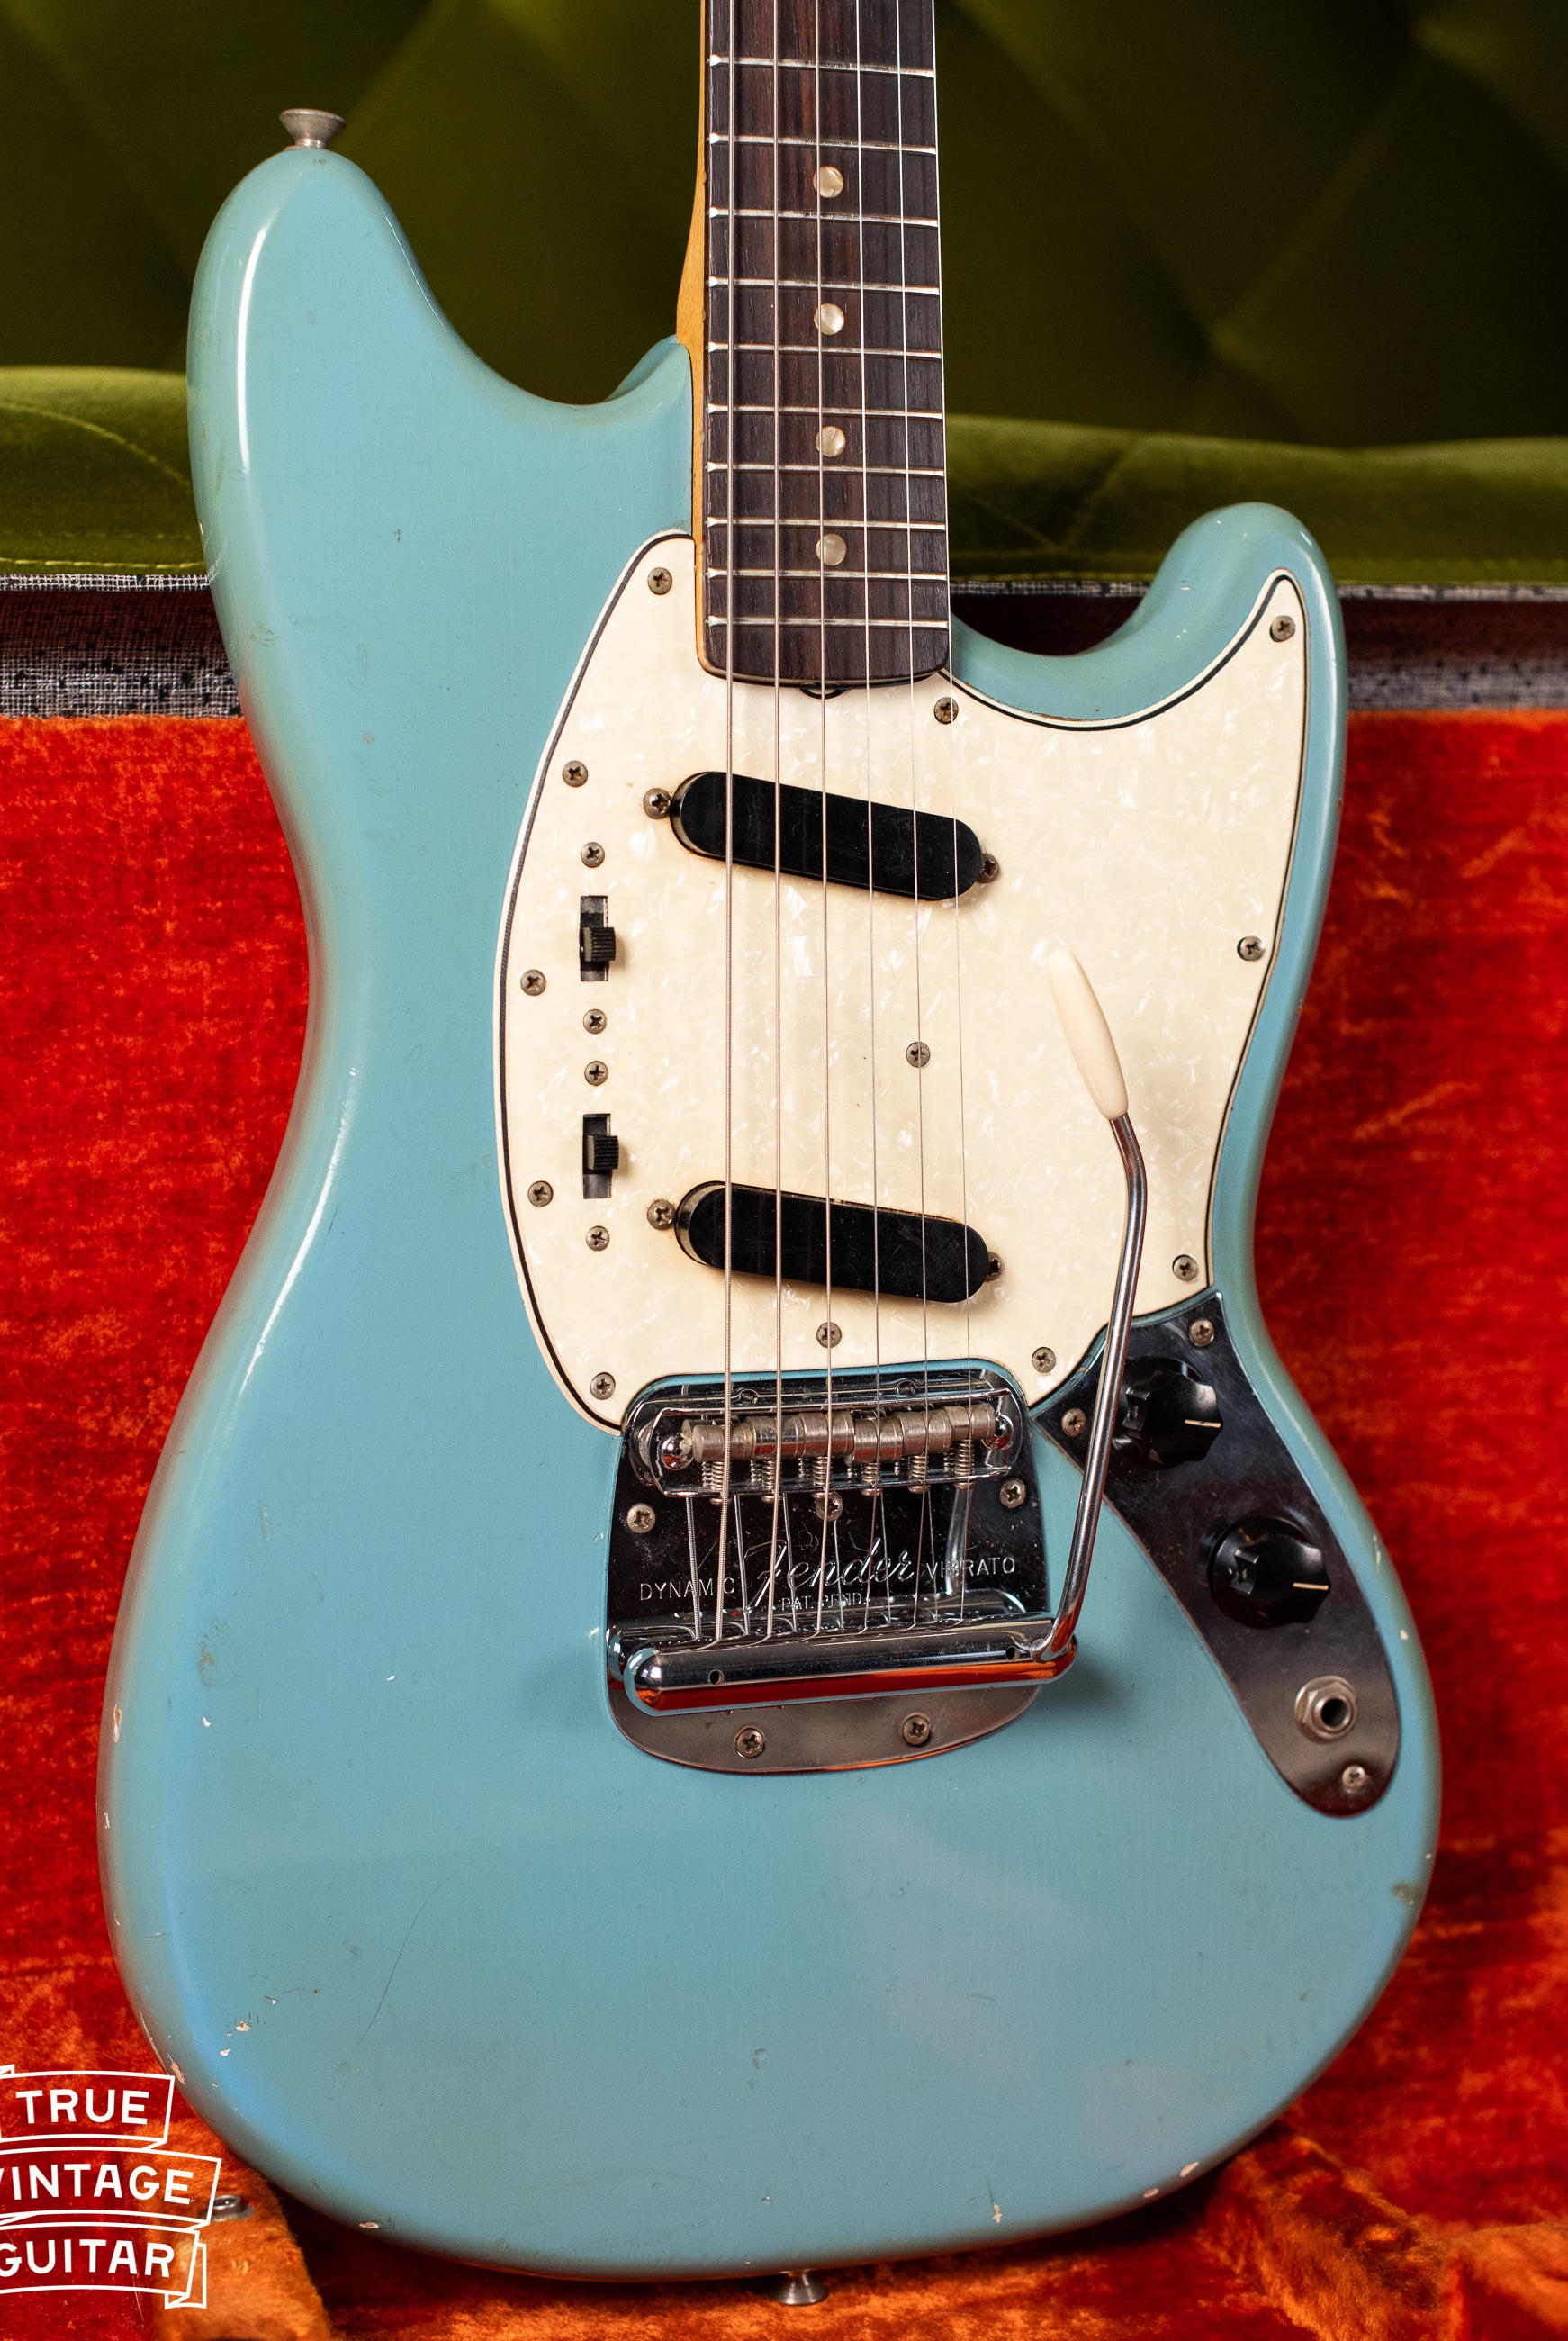 Vintage 1960s Fender guitar restoration